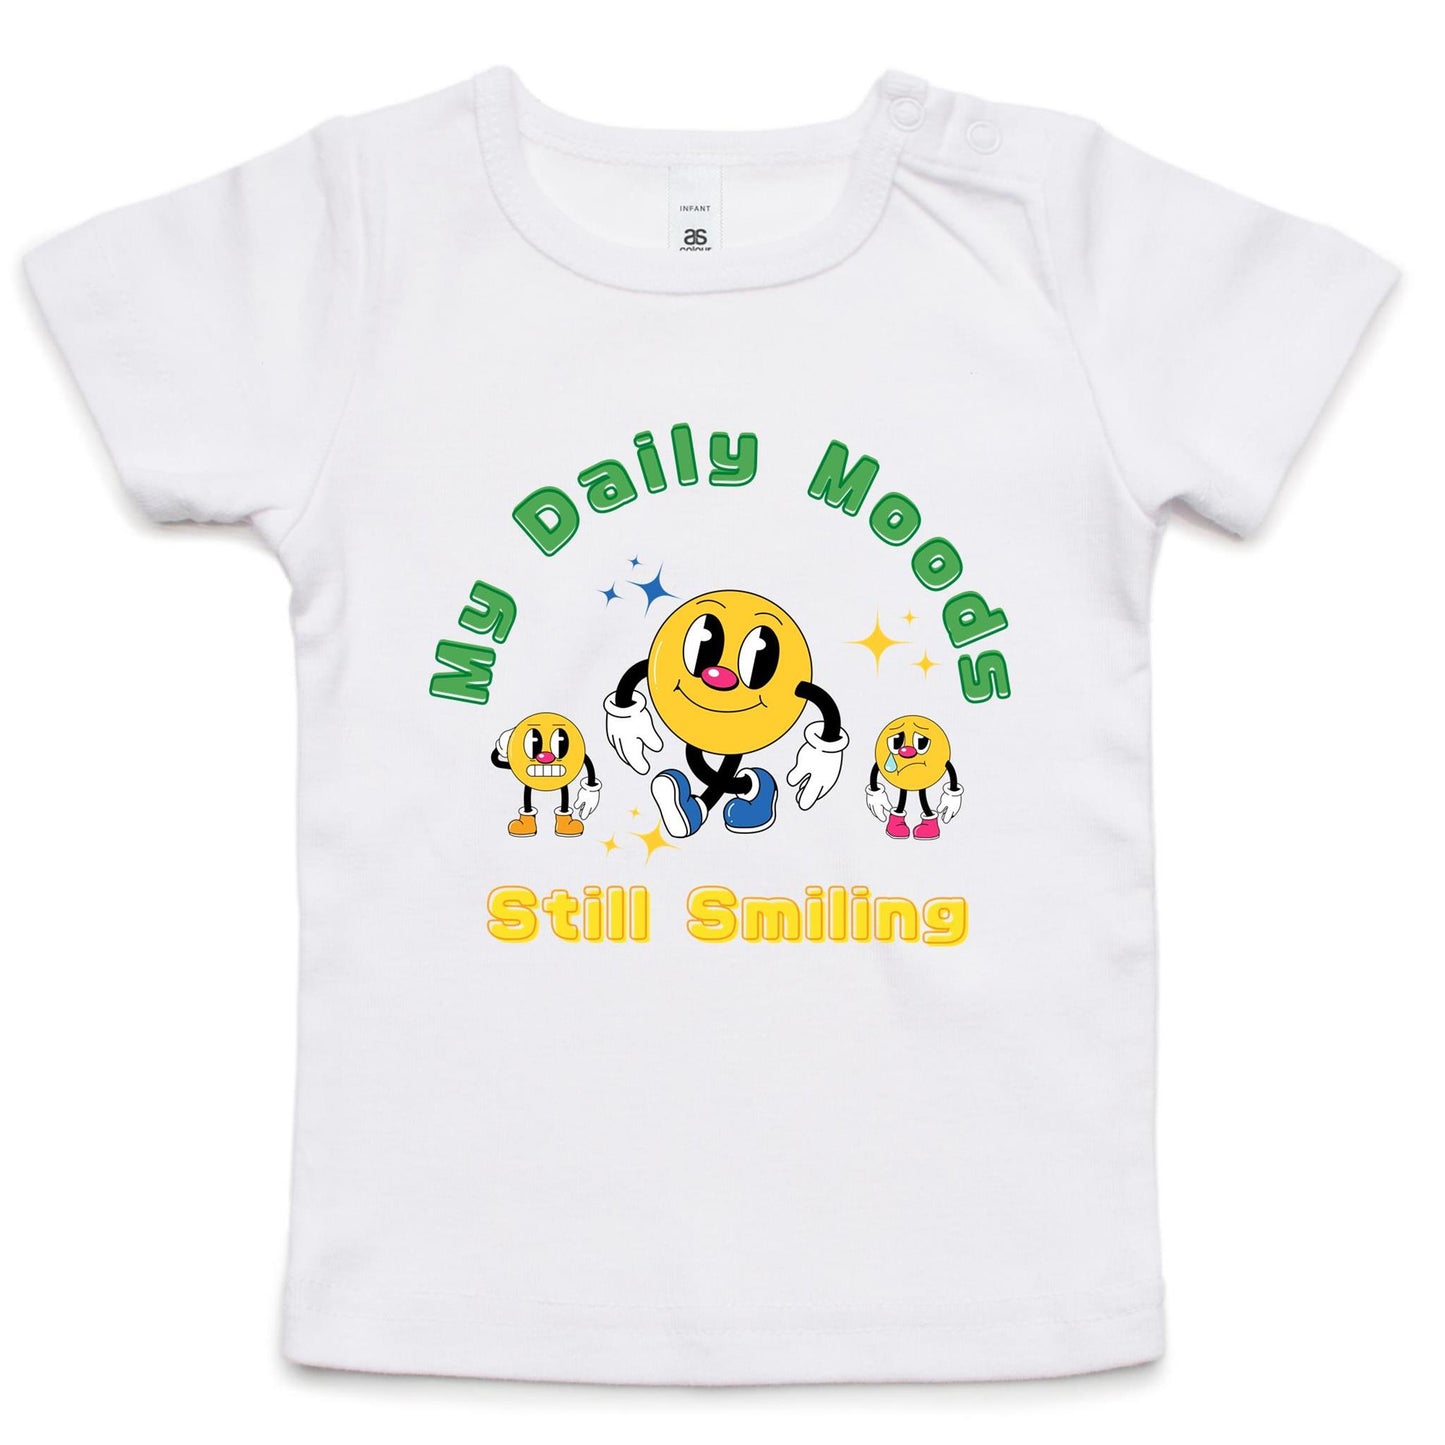 My Daily Moods - Baby T-shirt White Baby T-shirt